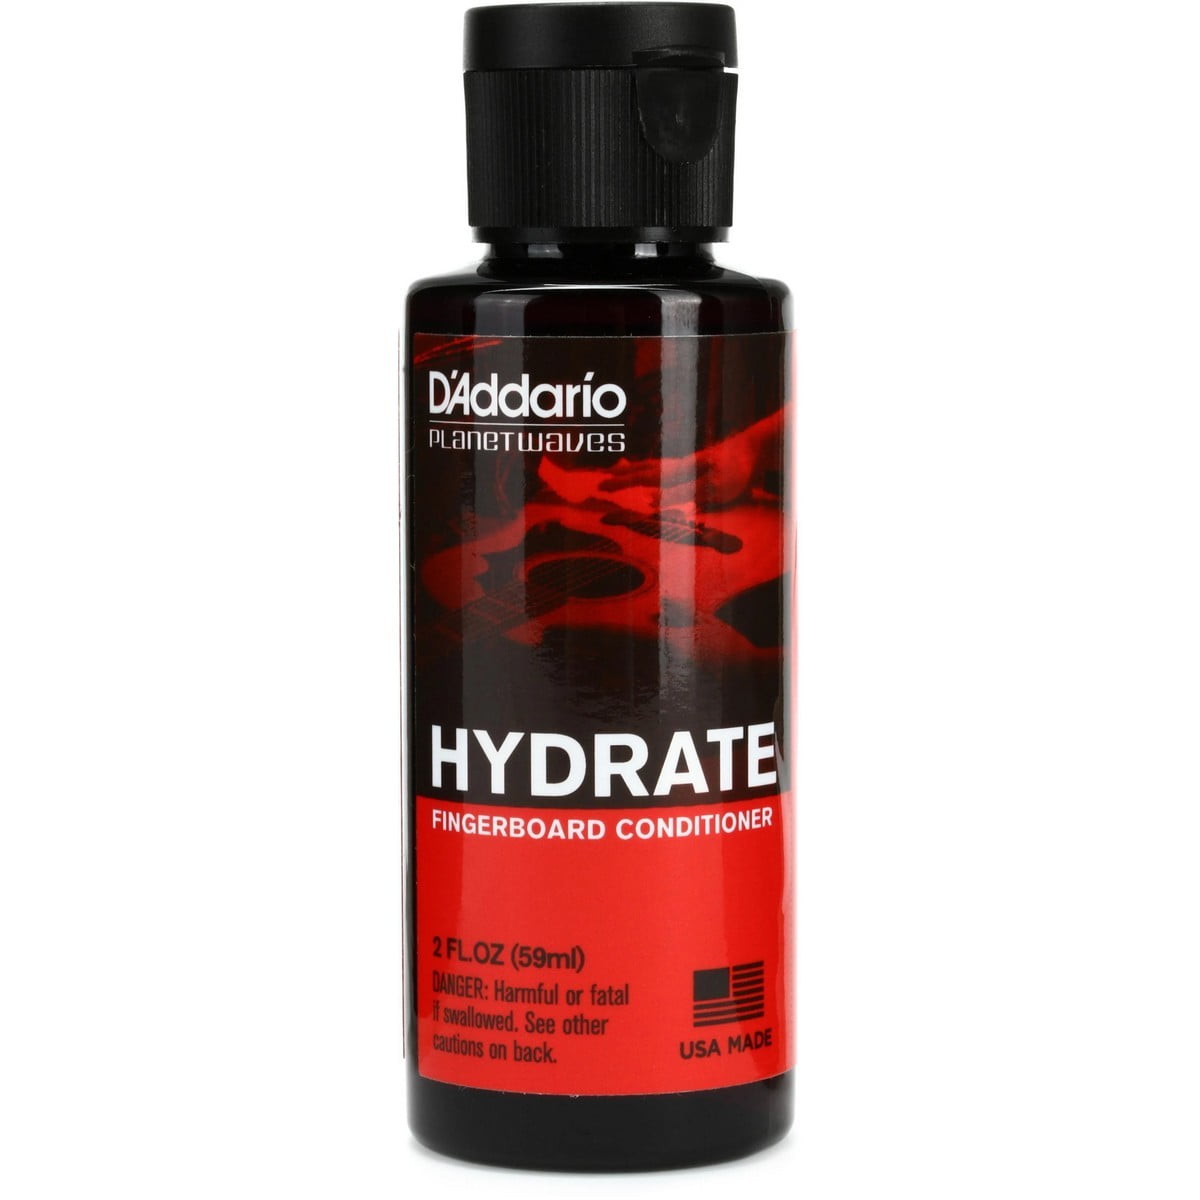 Daddario Hydrate Finderboard Conditioner